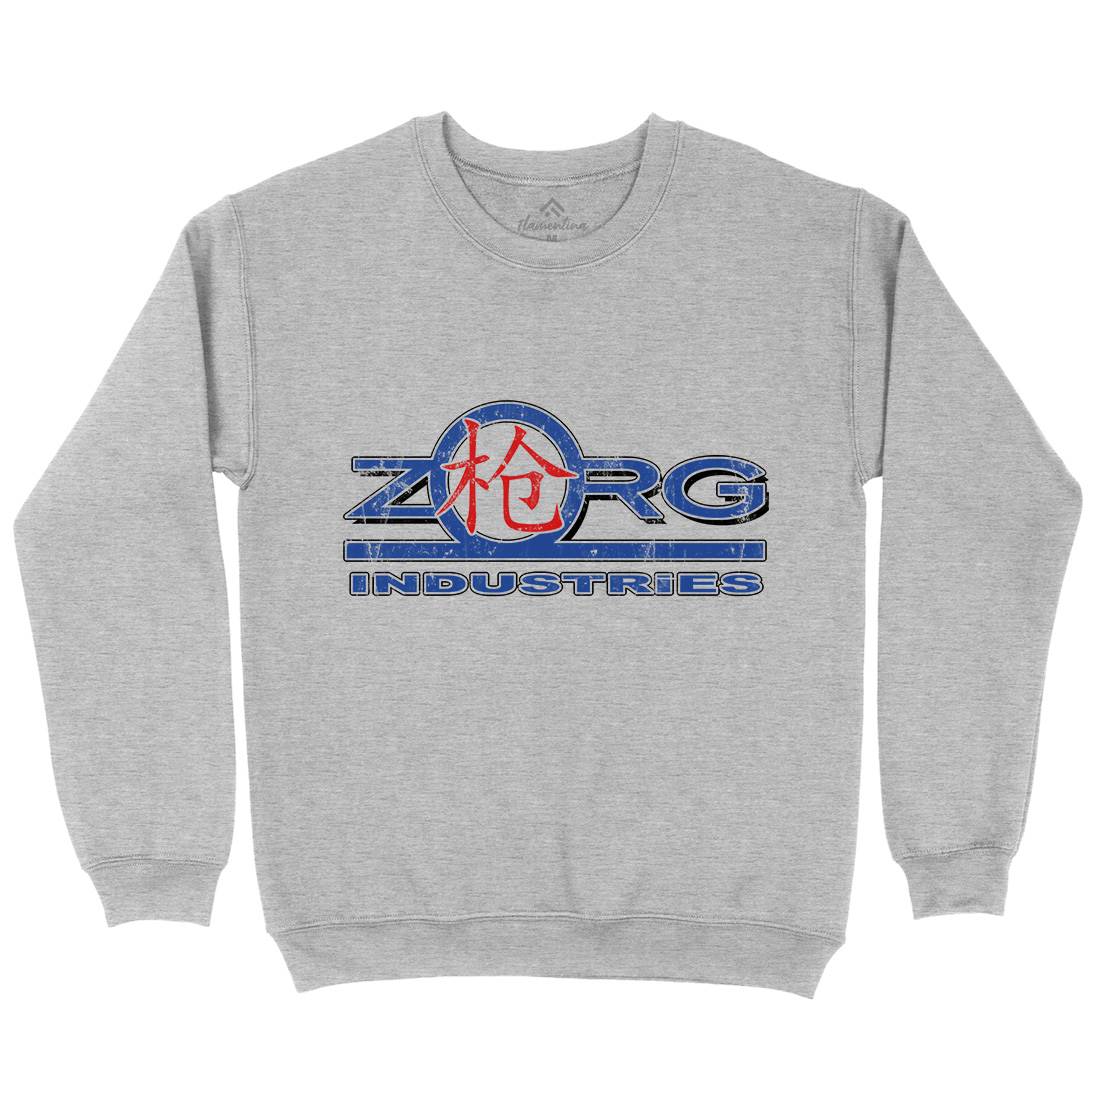 Zorg Ind Kids Crew Neck Sweatshirt Space D105